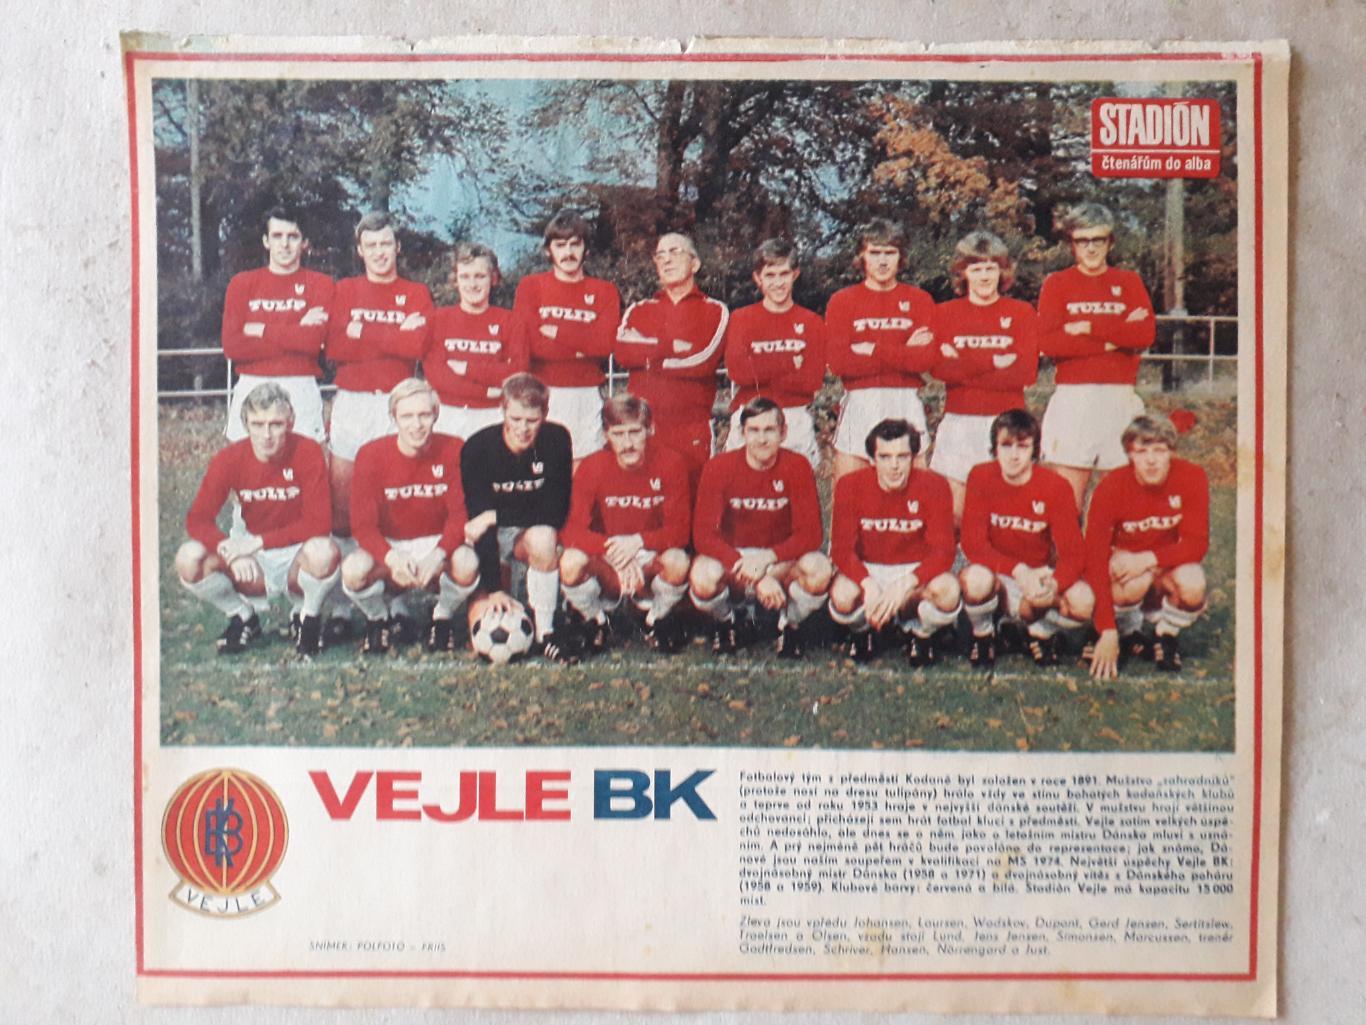 Постер из журнала Stadion- Vejle BK